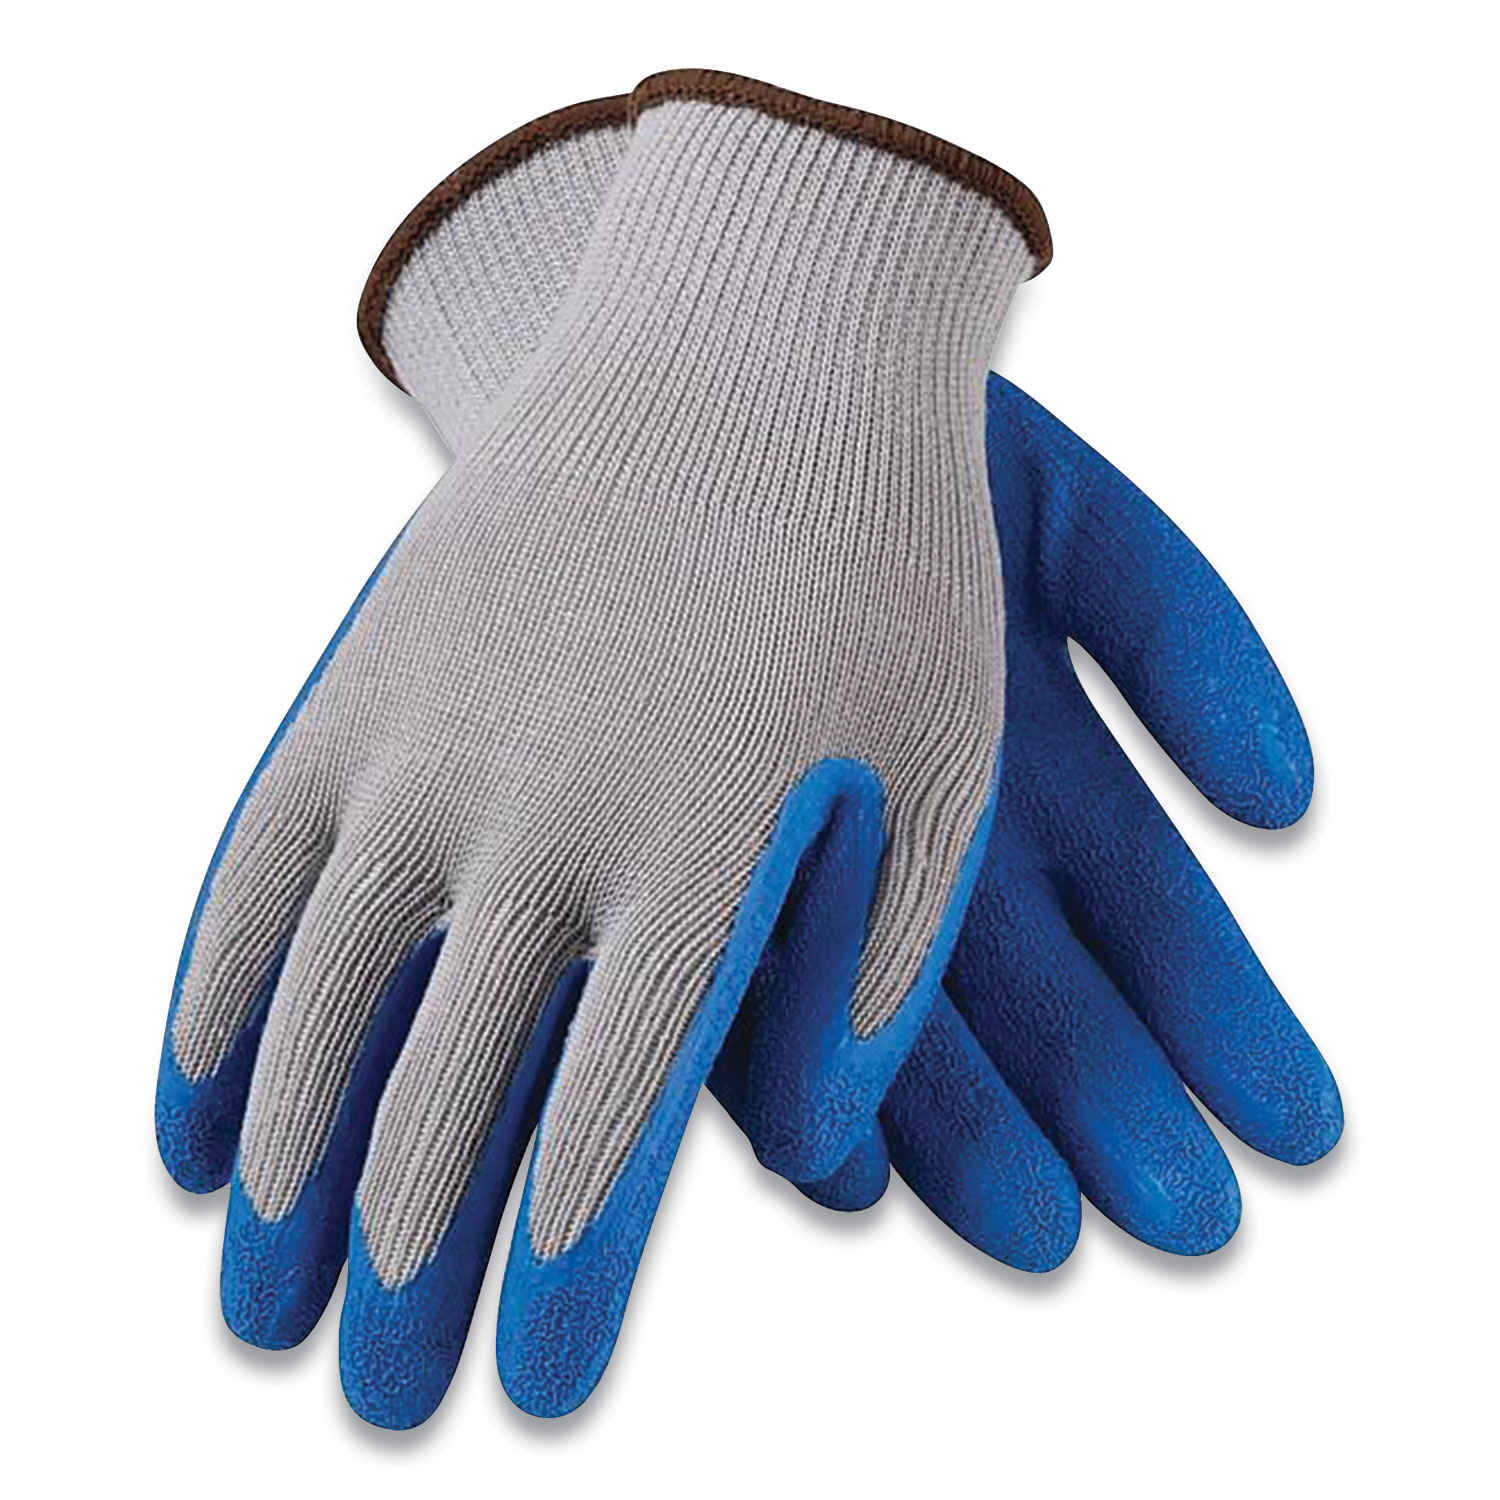 G-Tek GP Polyurethane-Coated Nylon Gloves Large Gray 12 Pairs